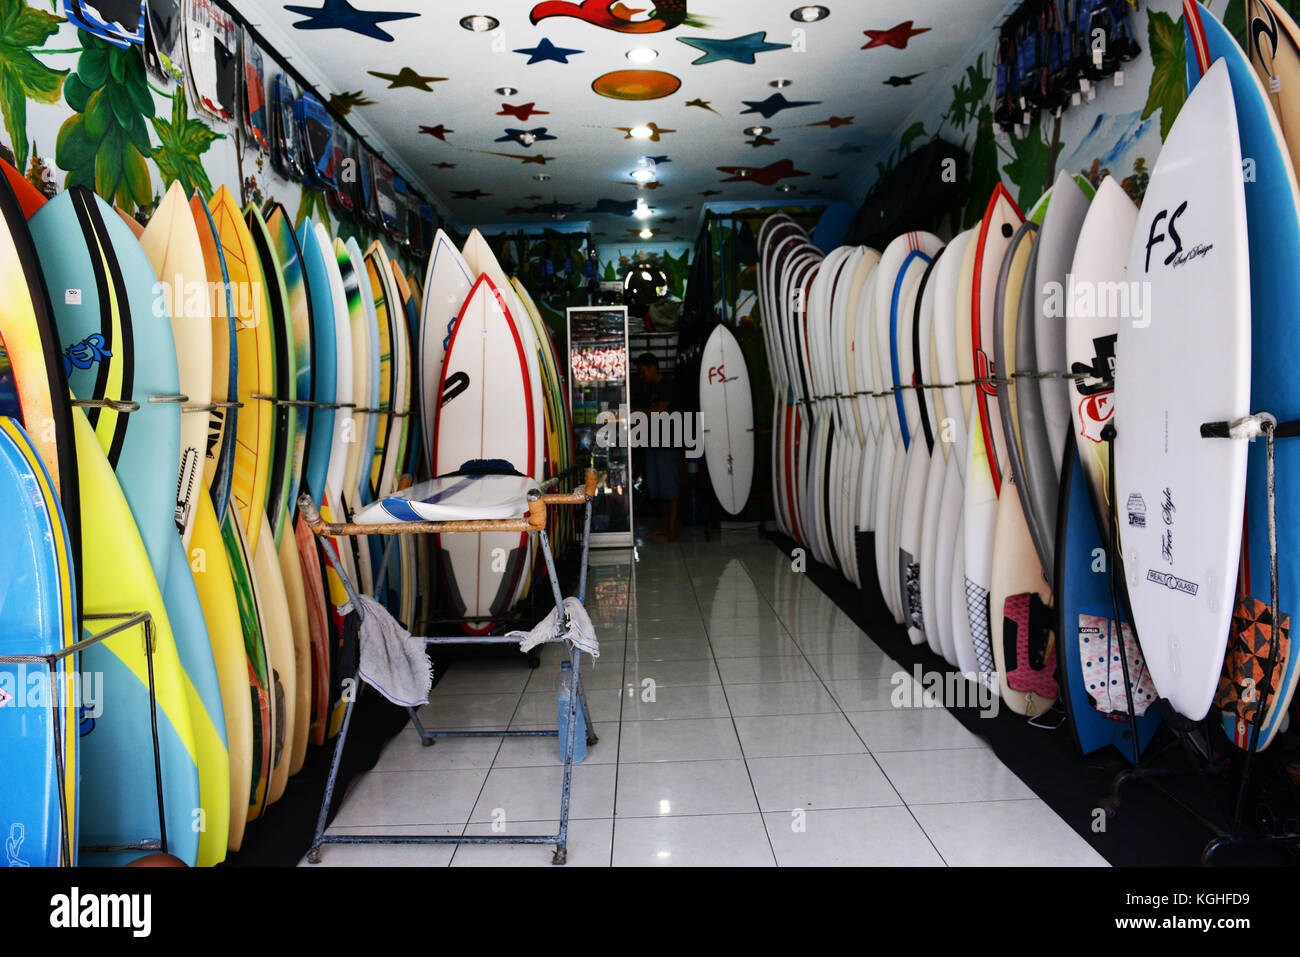 A Surfboard shop in Kuta, Bali Stock Photo - Alamy